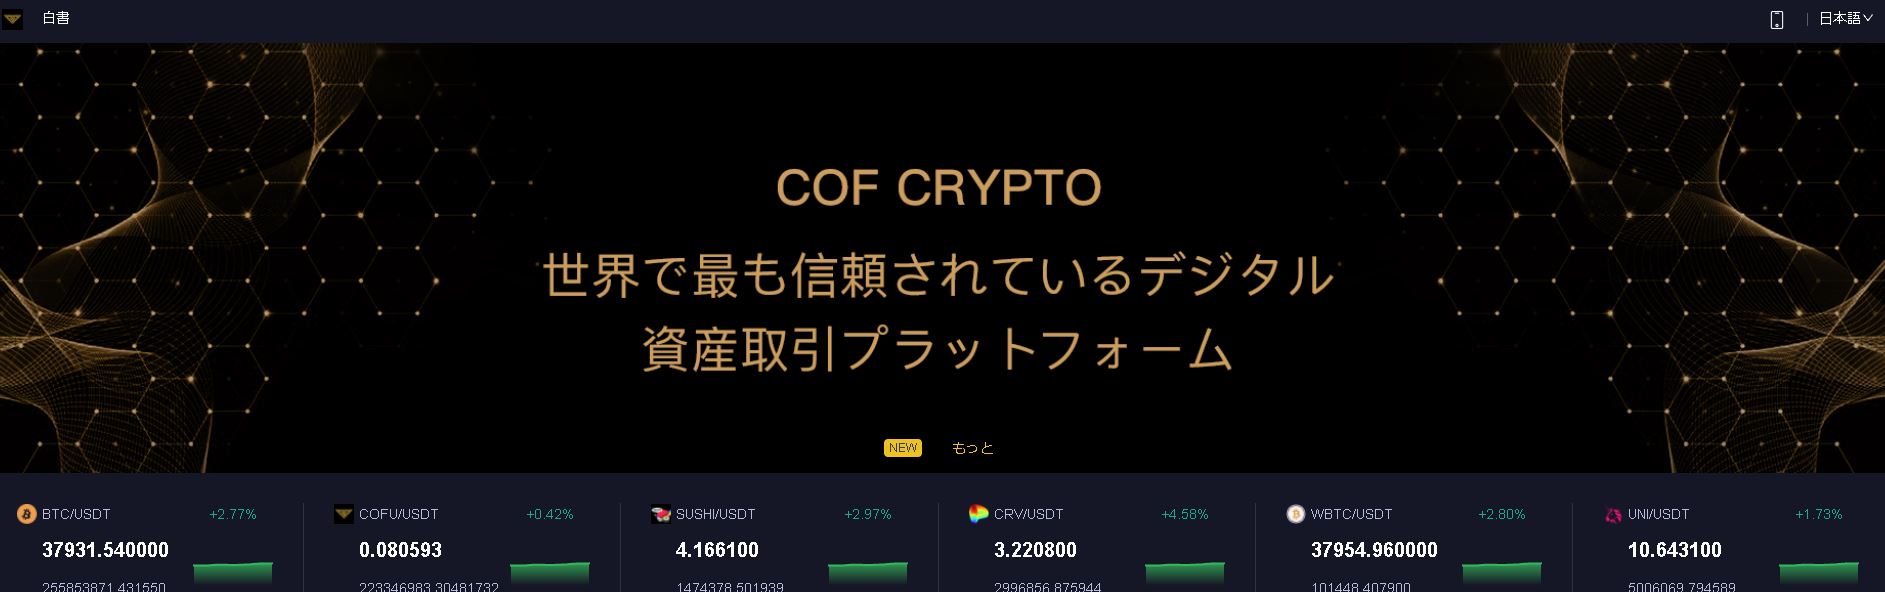 cofcrypto（COFクリプト）